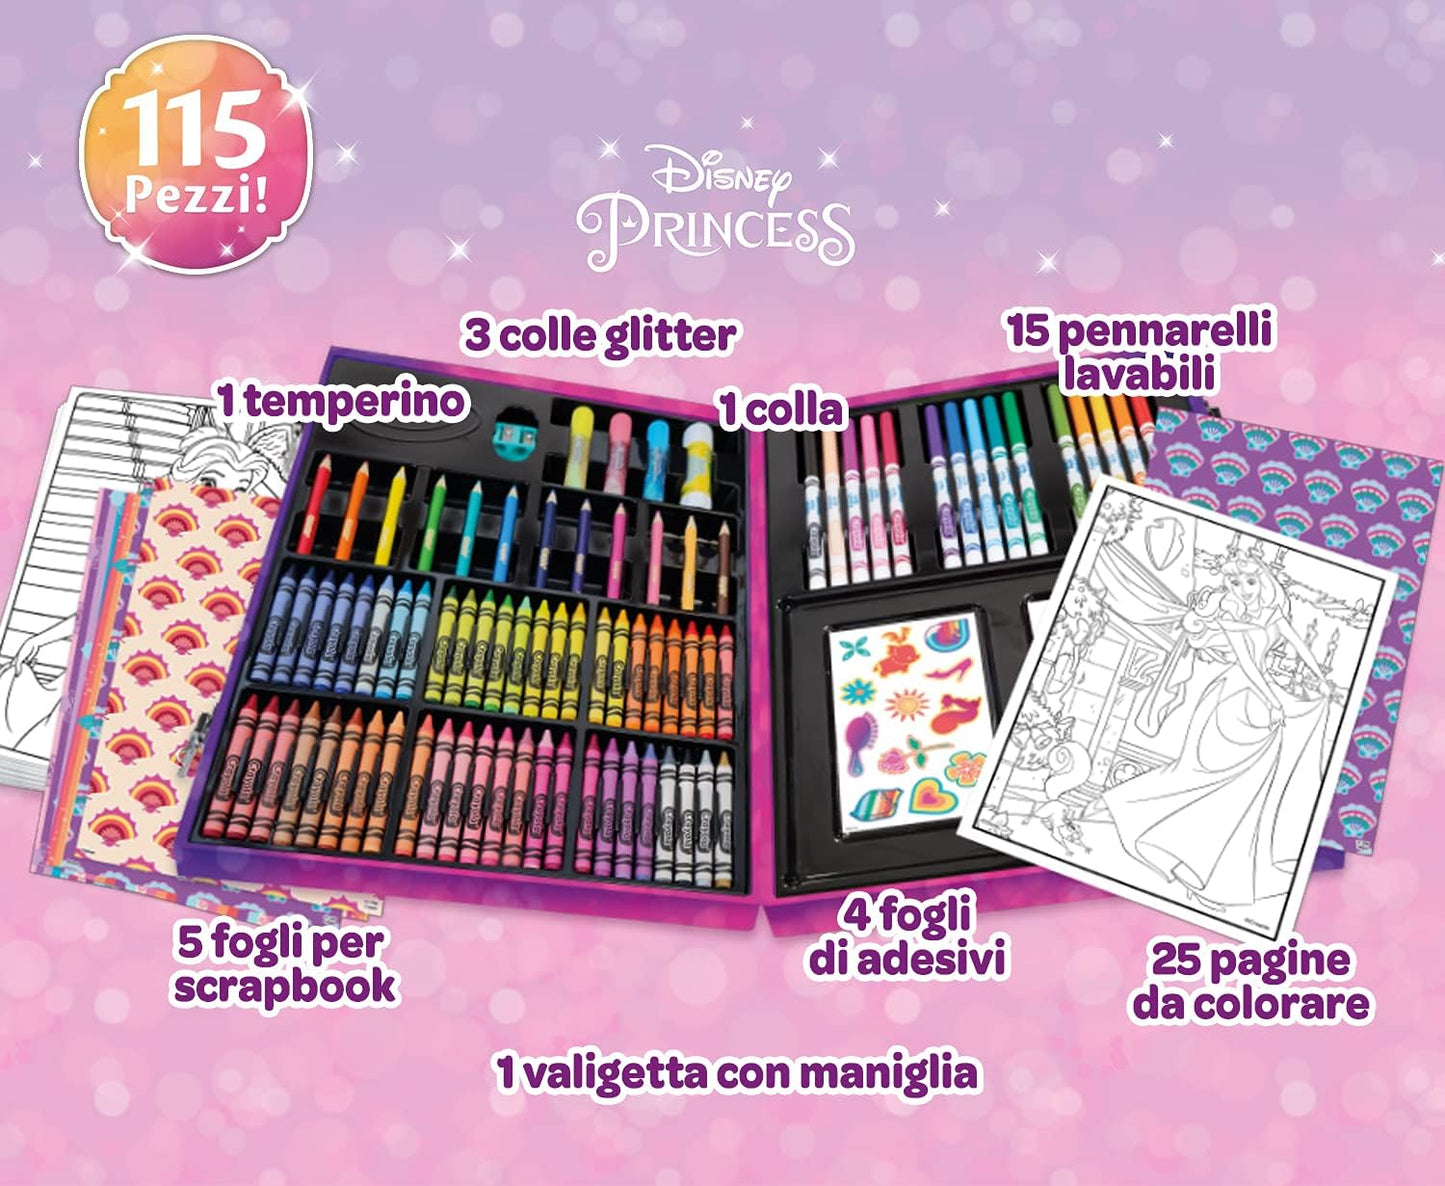 Crayola Inspirational Art Case Disney Princess - Pack of 115